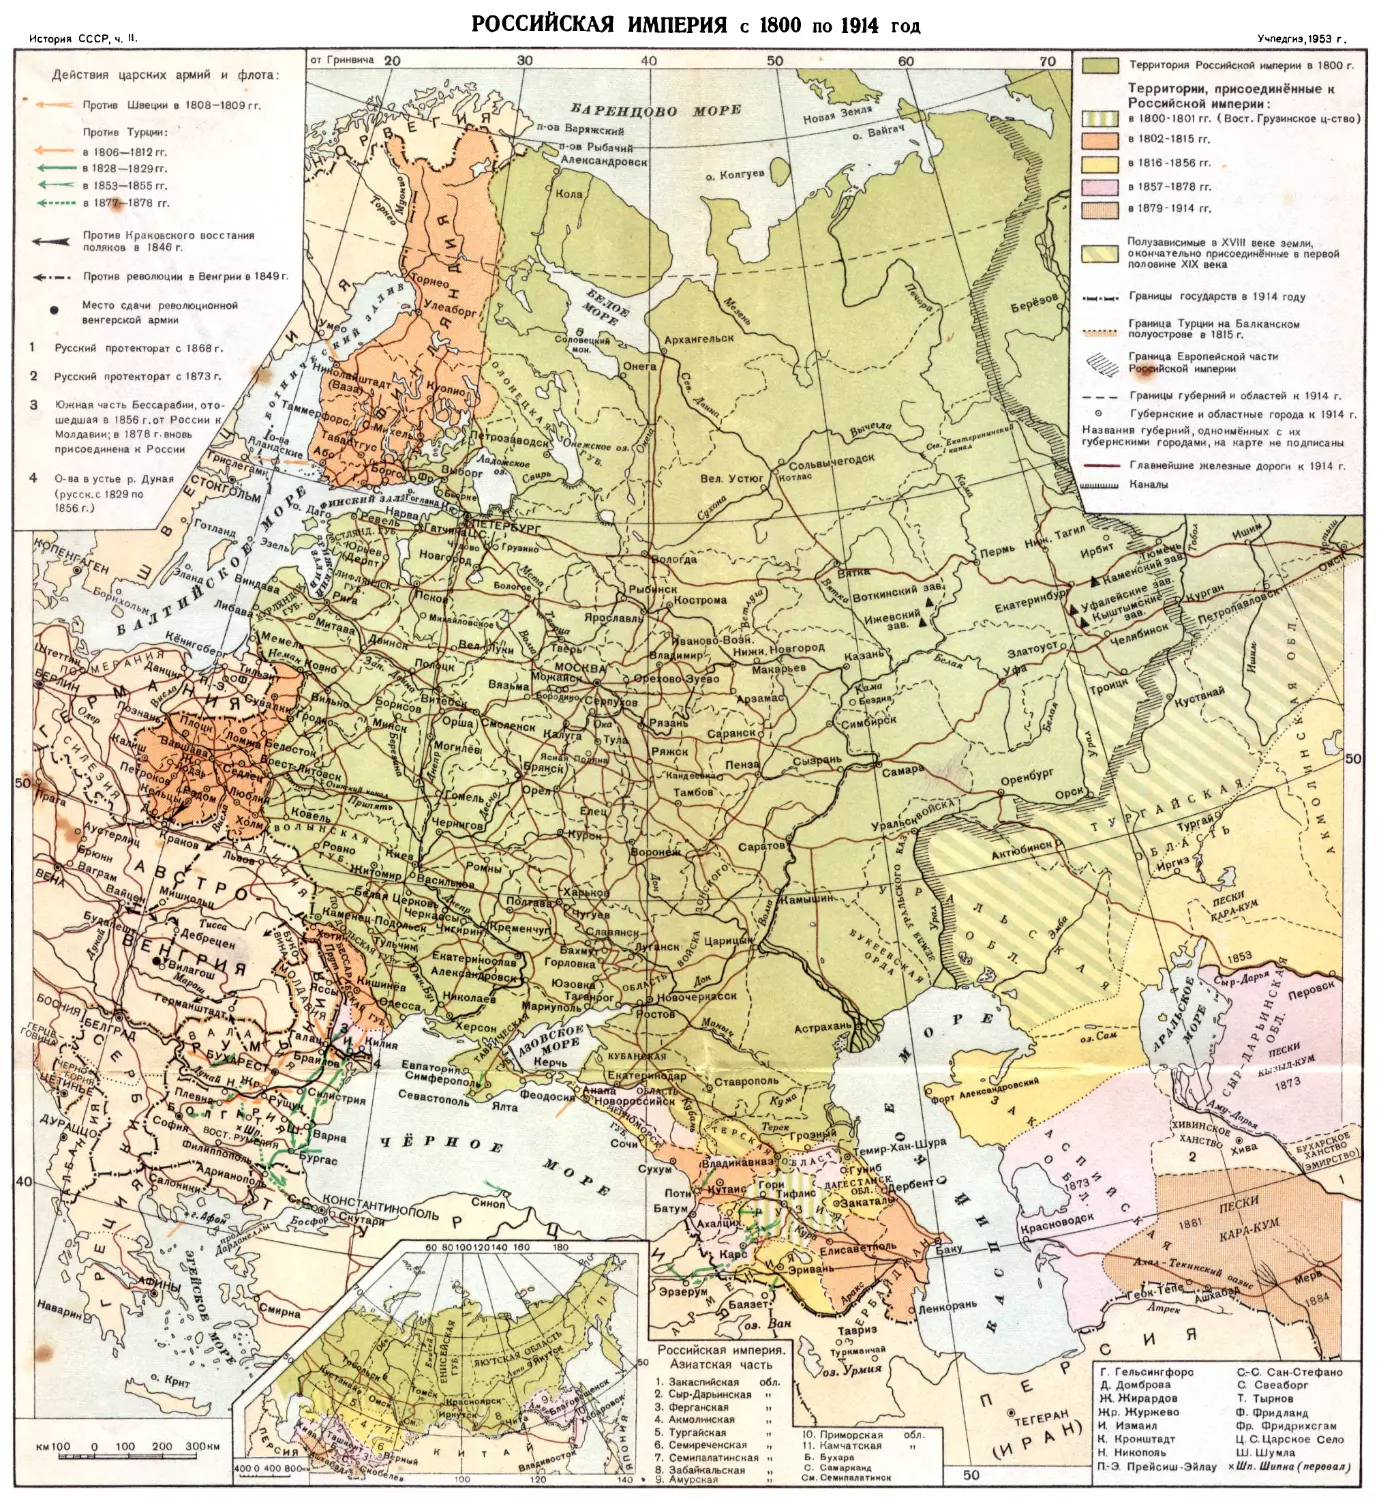 3. Российская империя с 1800 по 1914 год